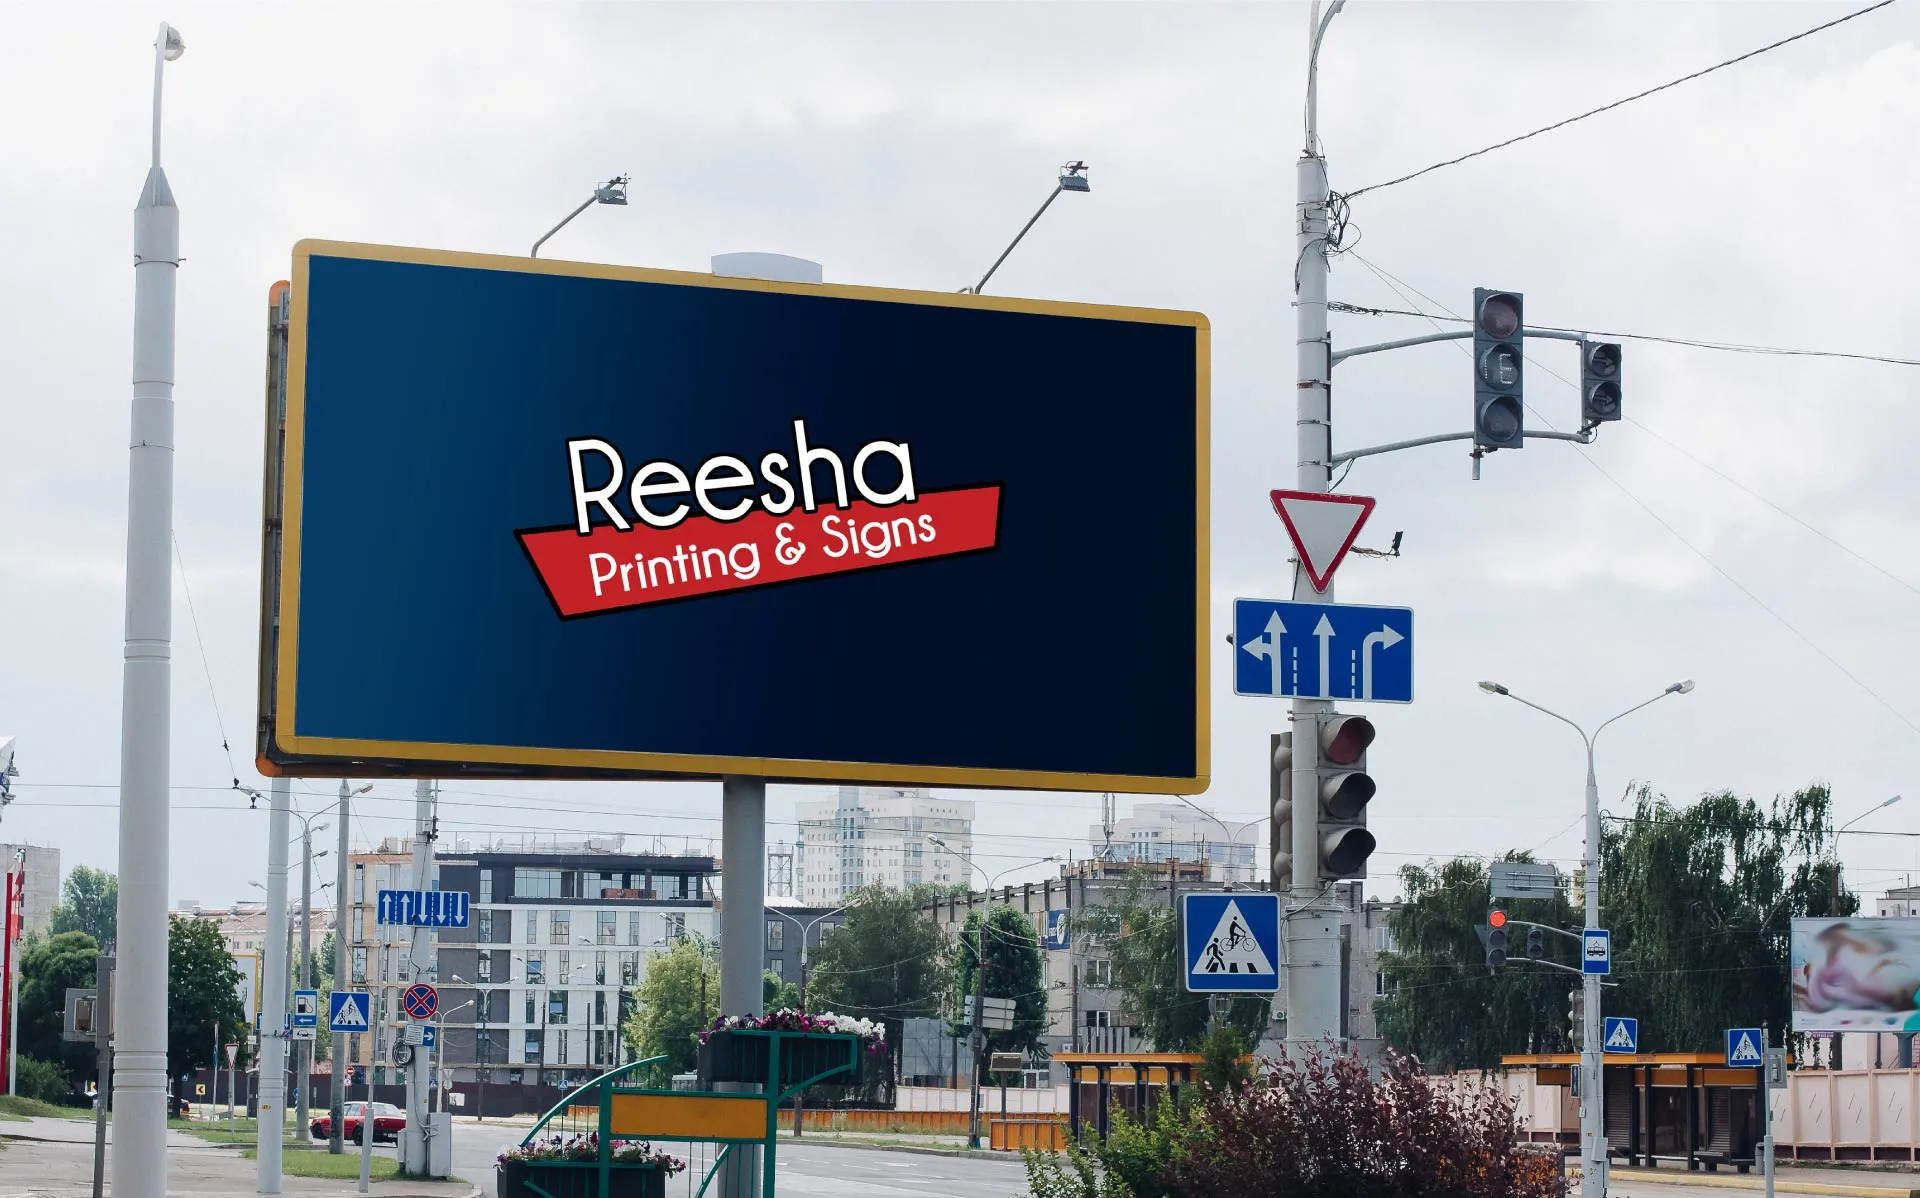 led signs Reesha printing & signs